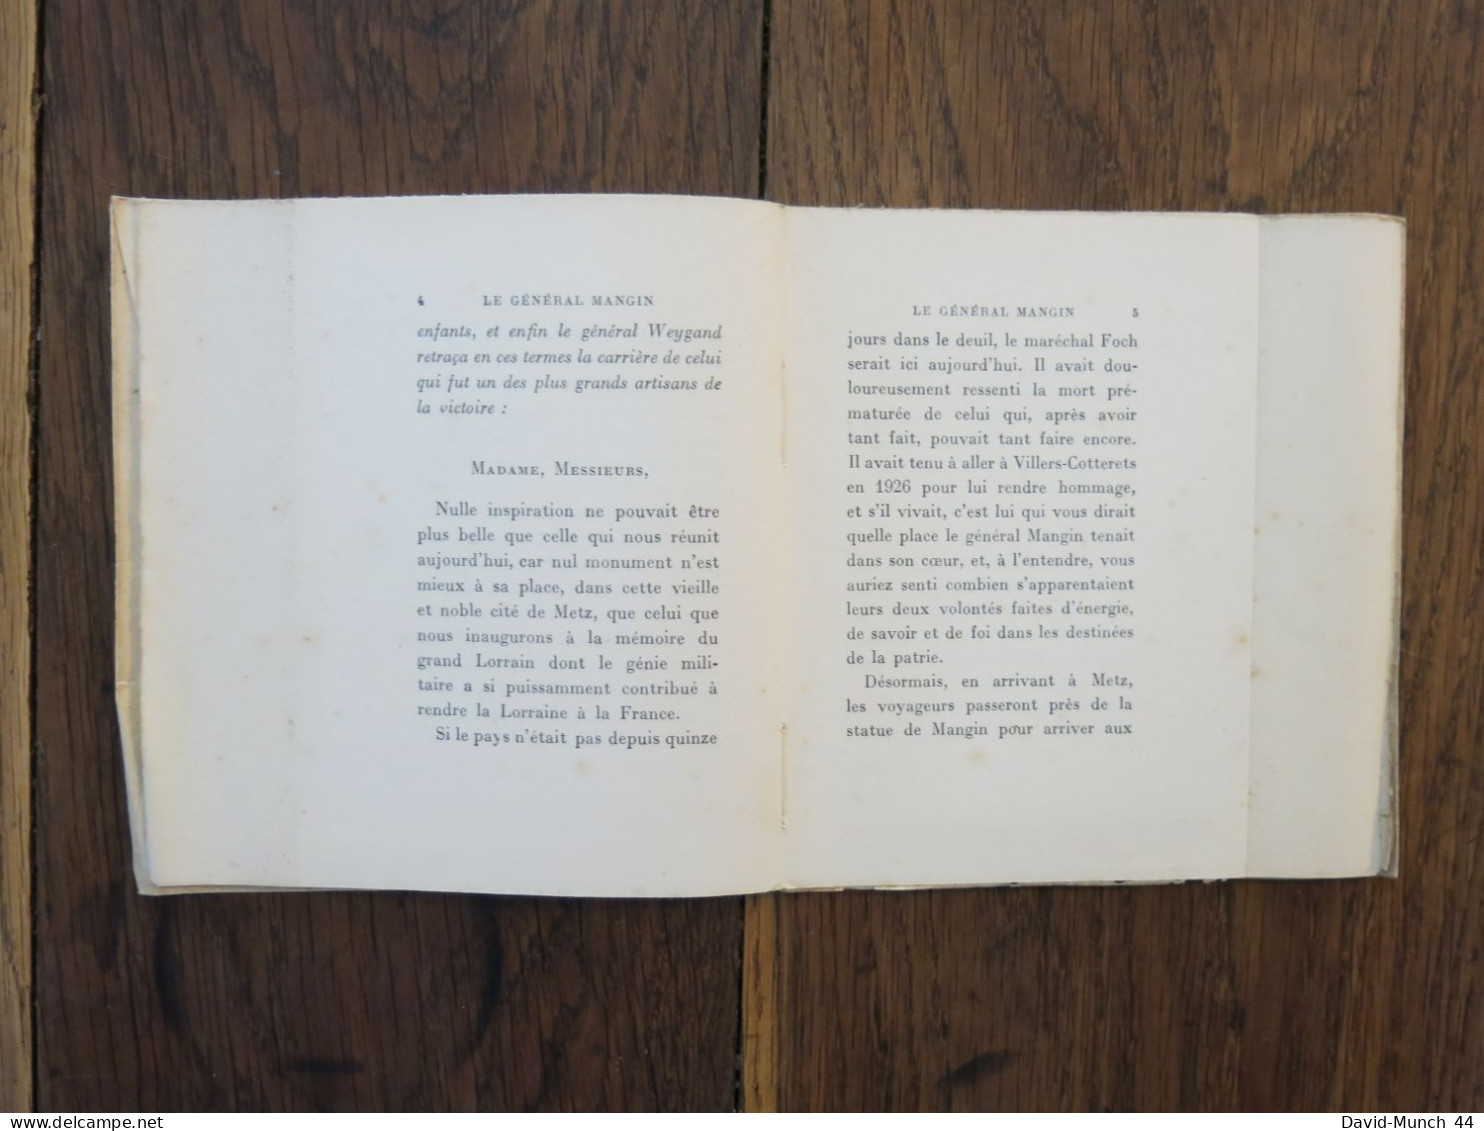 Mangin du Général Weygand. Paris, Librairie Plon. 1929, exemplaire numéroté